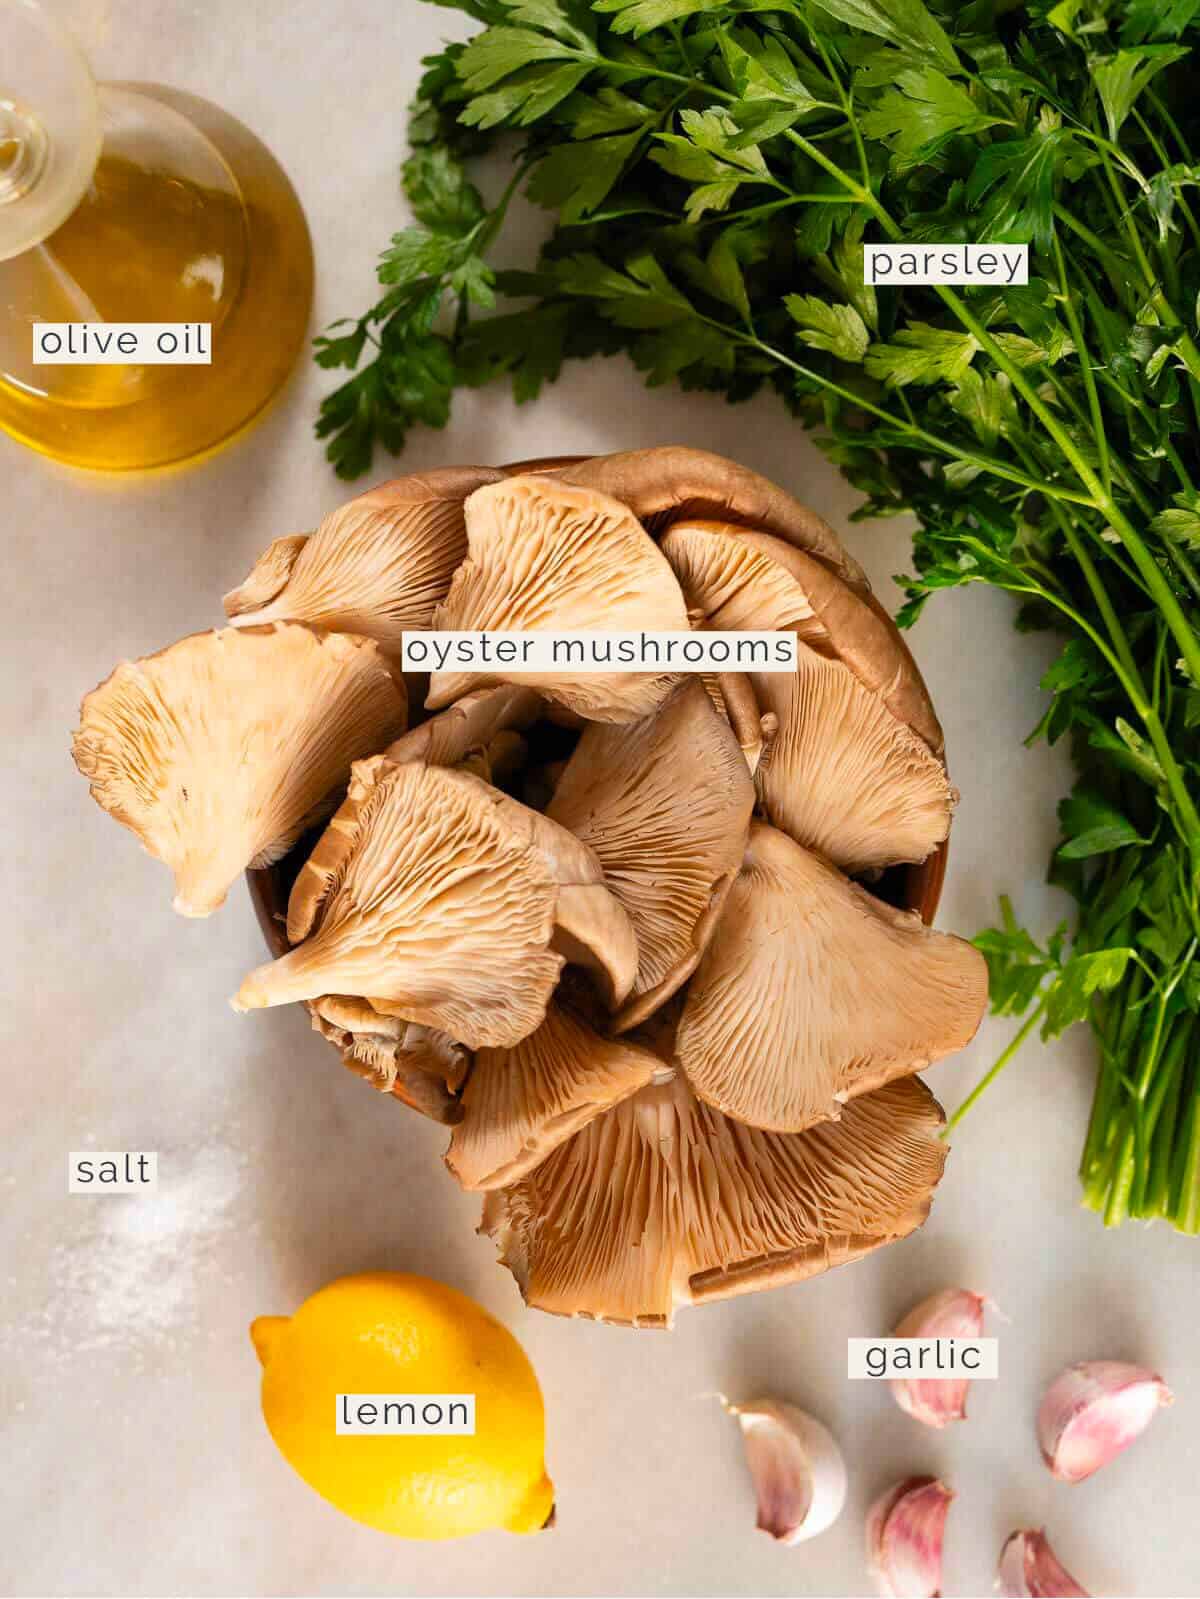 ingredients to make seared vegan oyster mushrooms recipe.